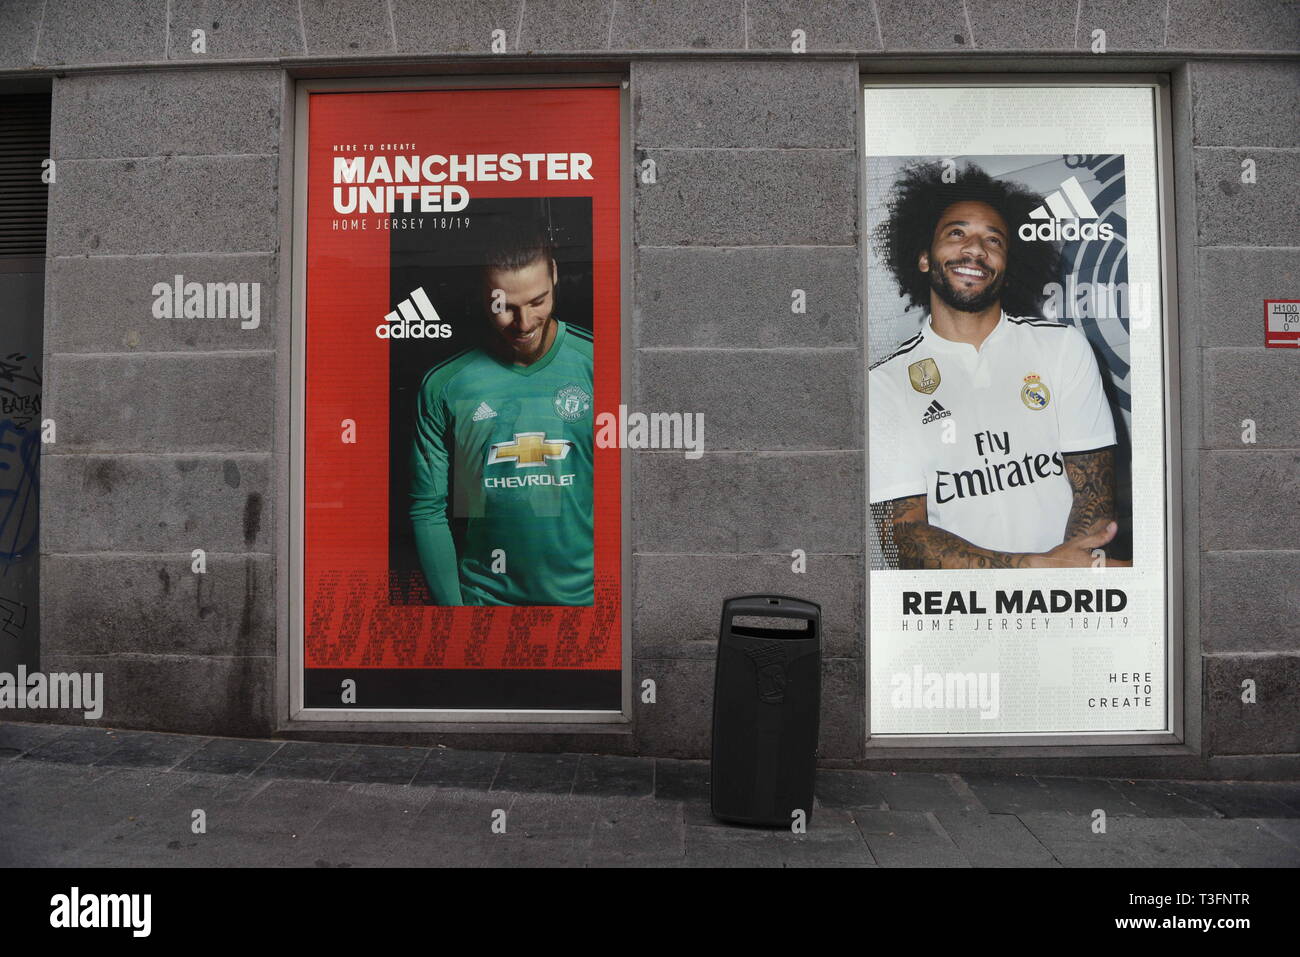 Madrid, Madrid, Spagna. 9 apr, 2019. Un annuncio pubblicitario Adidas visto  su un Adidas store in Madrid. Credito: John Milner/SOPA Immagini/ZUMA  filo/Alamy Live News Foto stock - Alamy